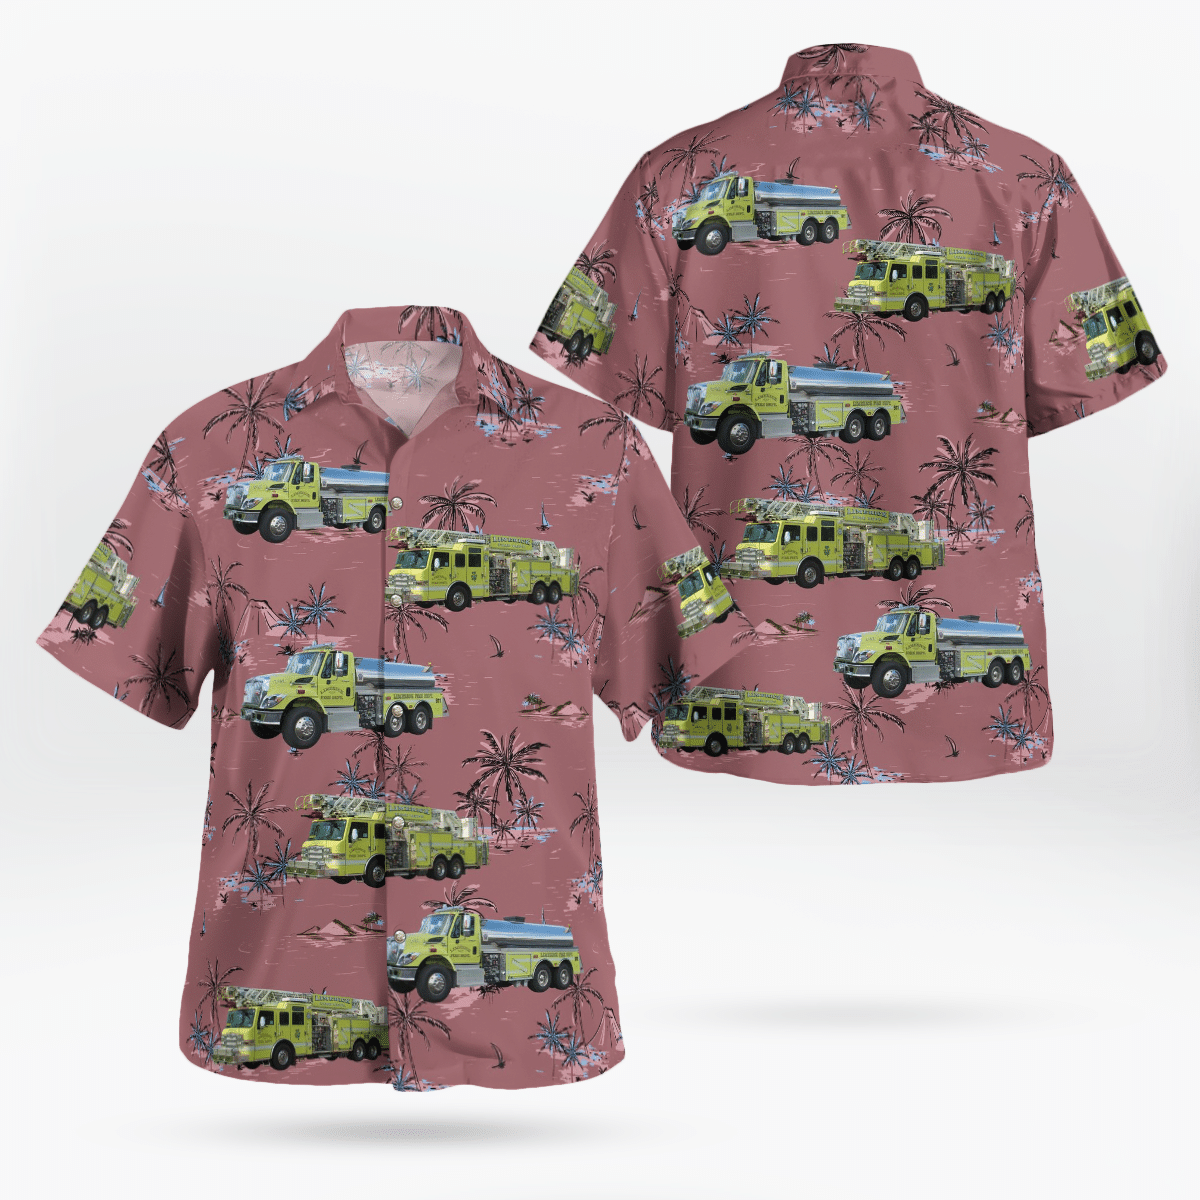 You won't regret buying these Aloha Shirt 52